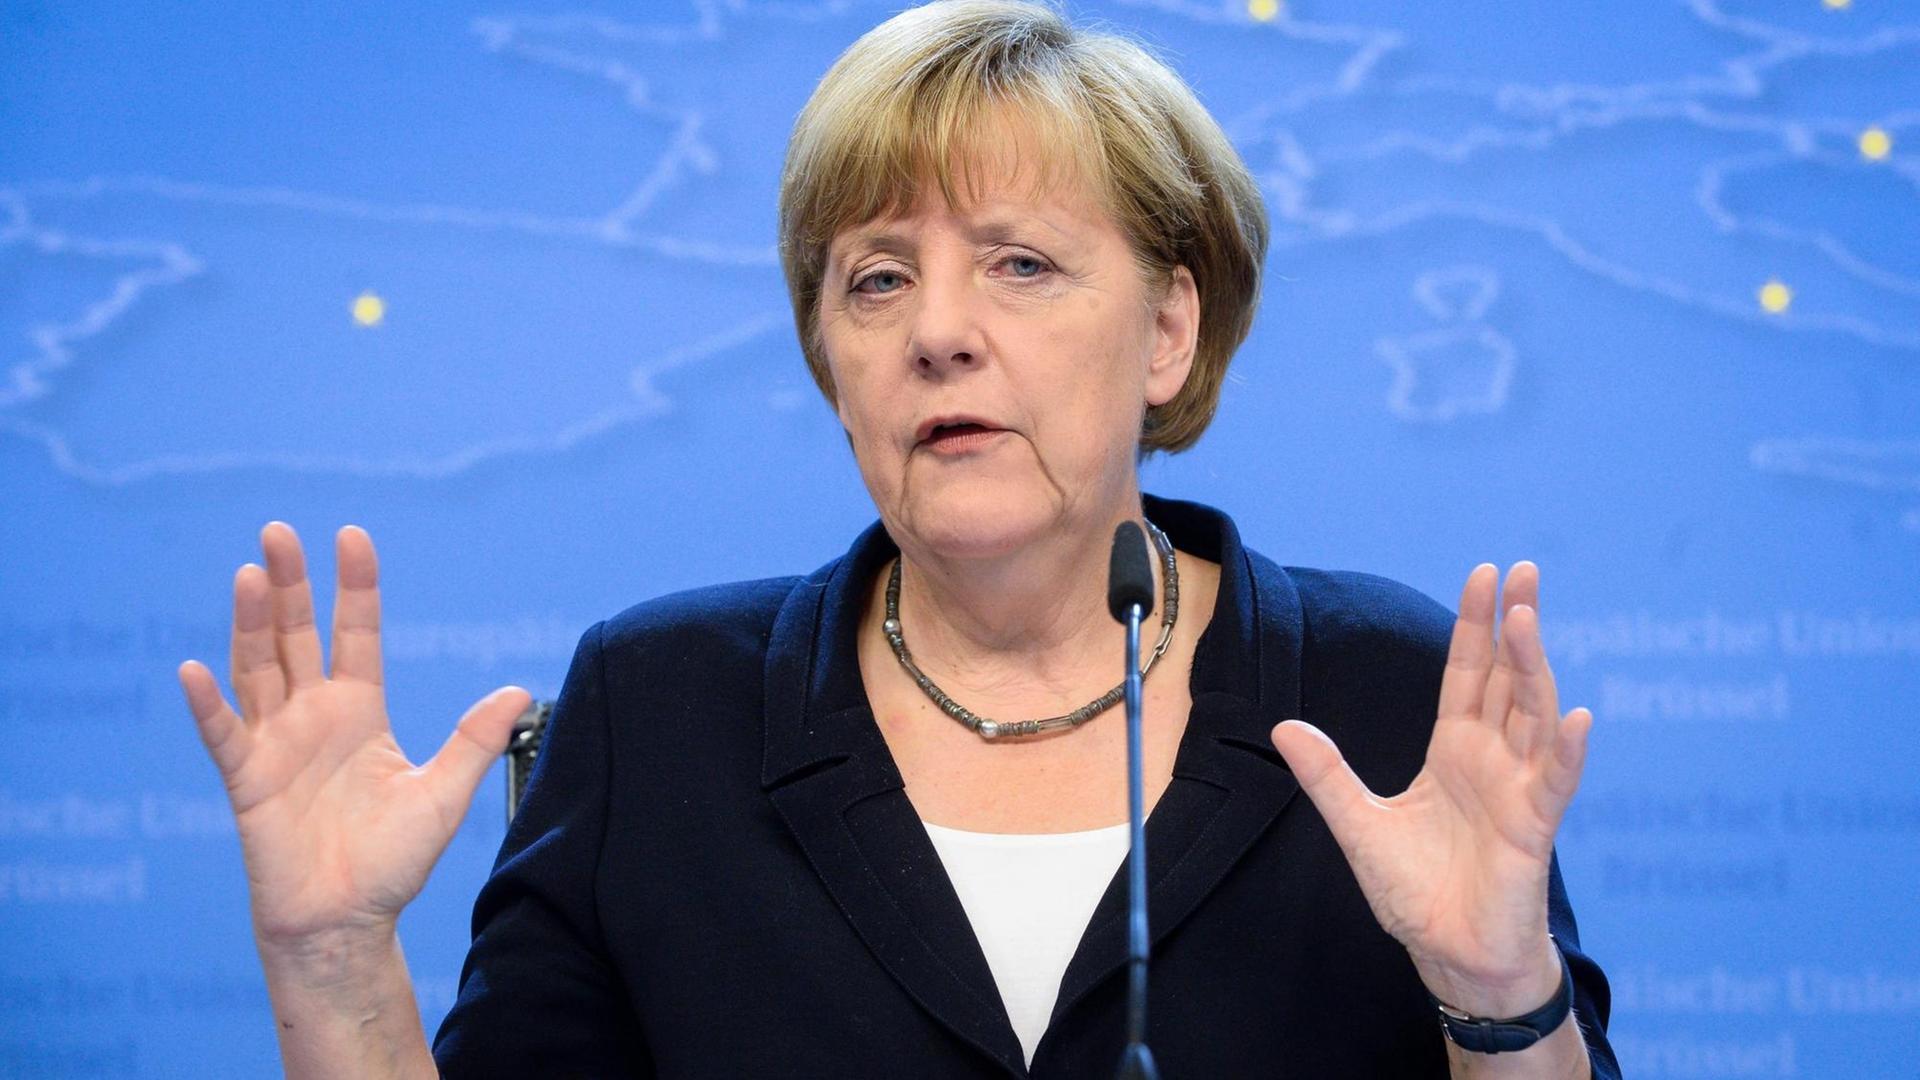 Angela Merkel spricht an einem Rednerpult und gestikuliert mit den Händen.